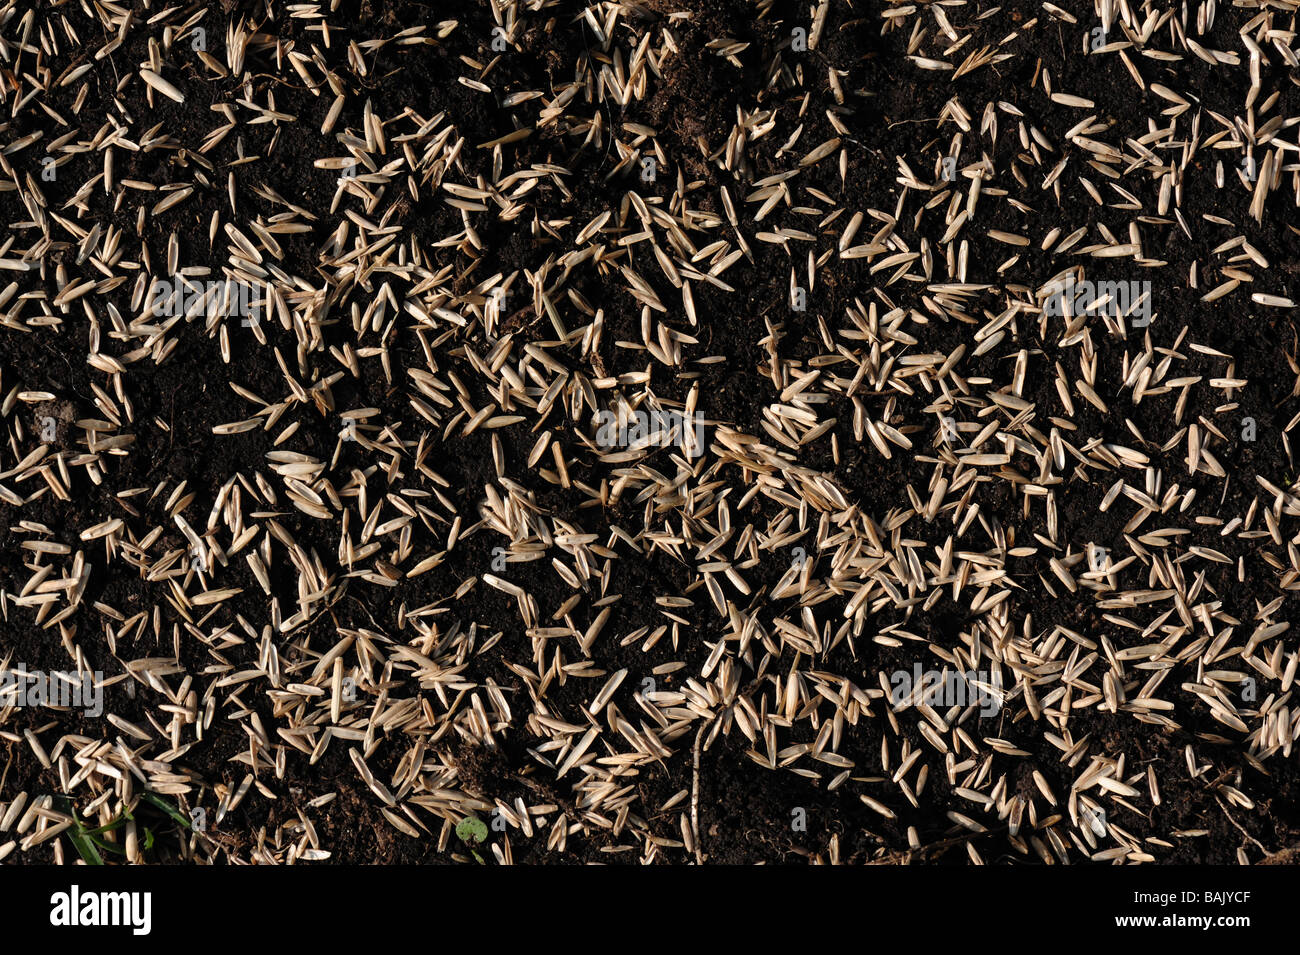 Prato sementi da prato una miscela di loglio inglese sparsi sul suolo Foto Stock